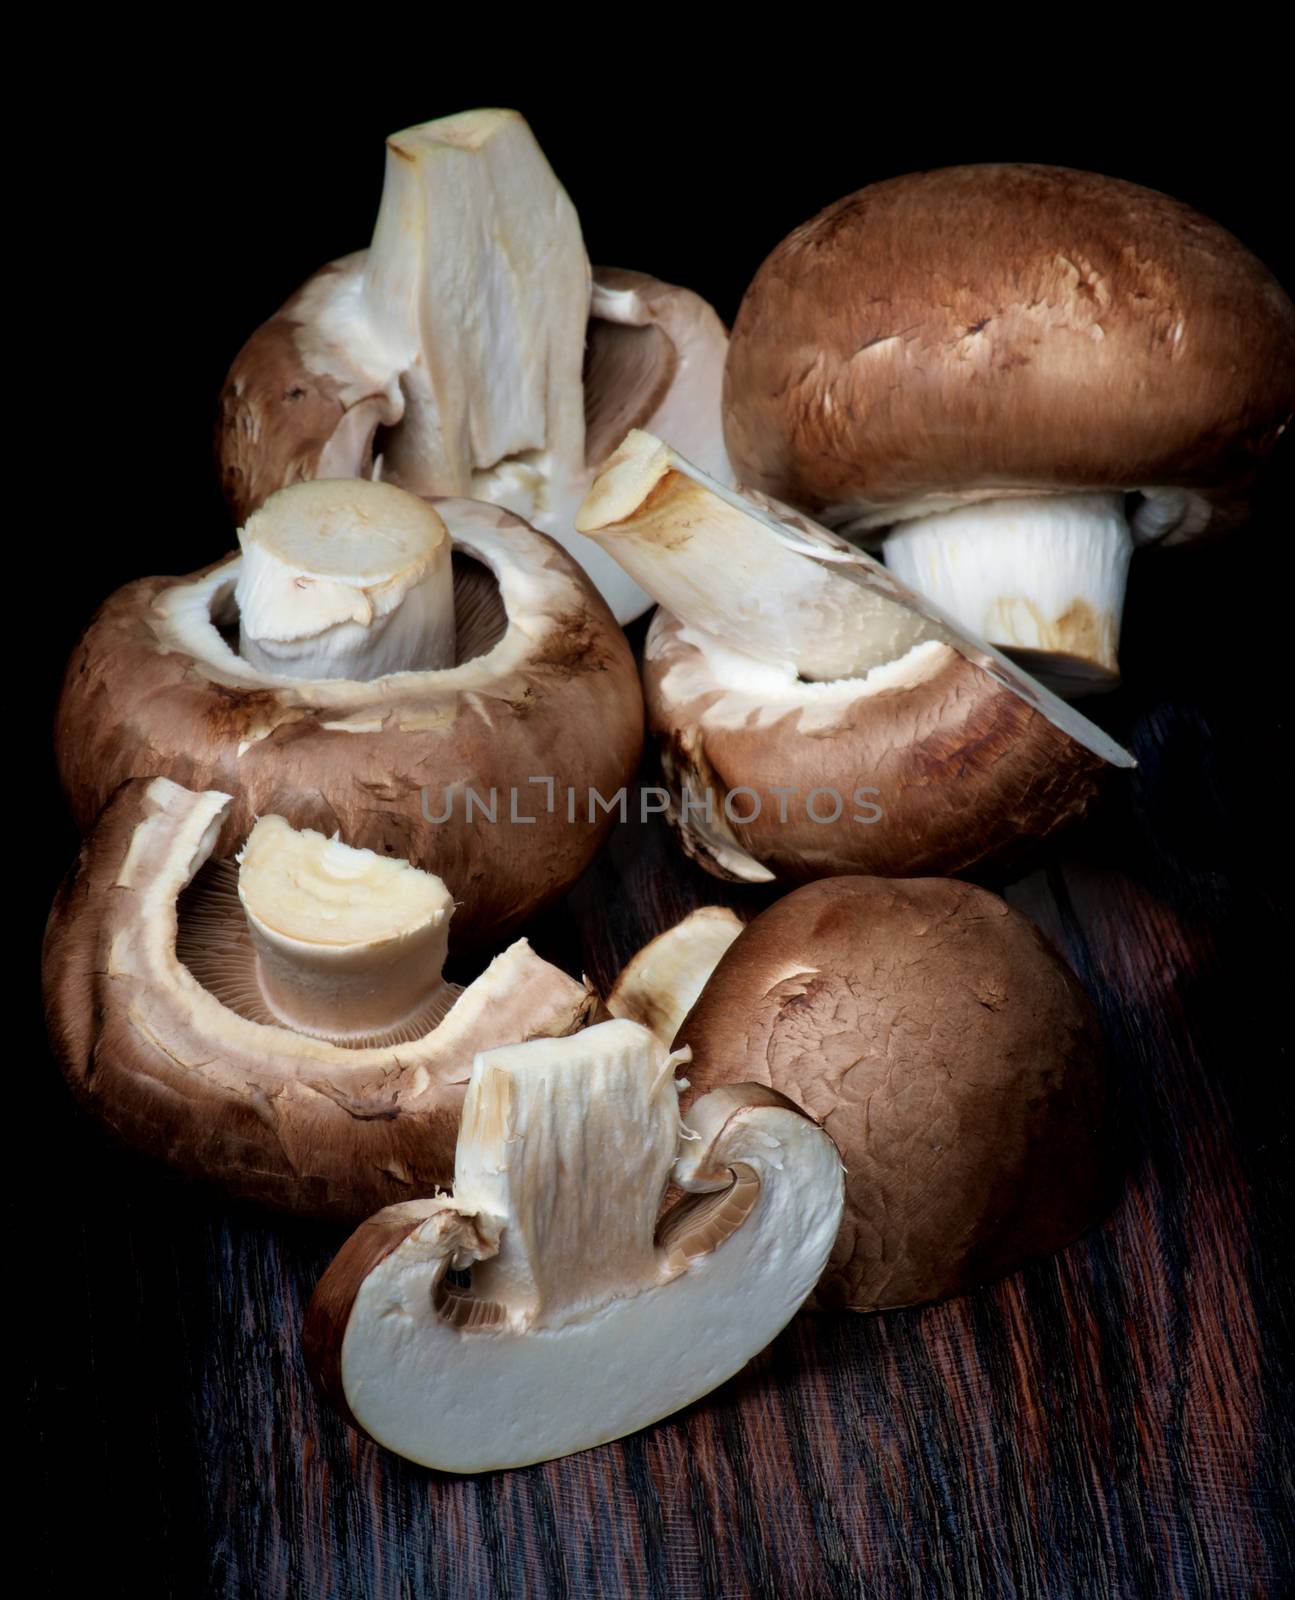 Raw Portobello Mushrooms by zhekos